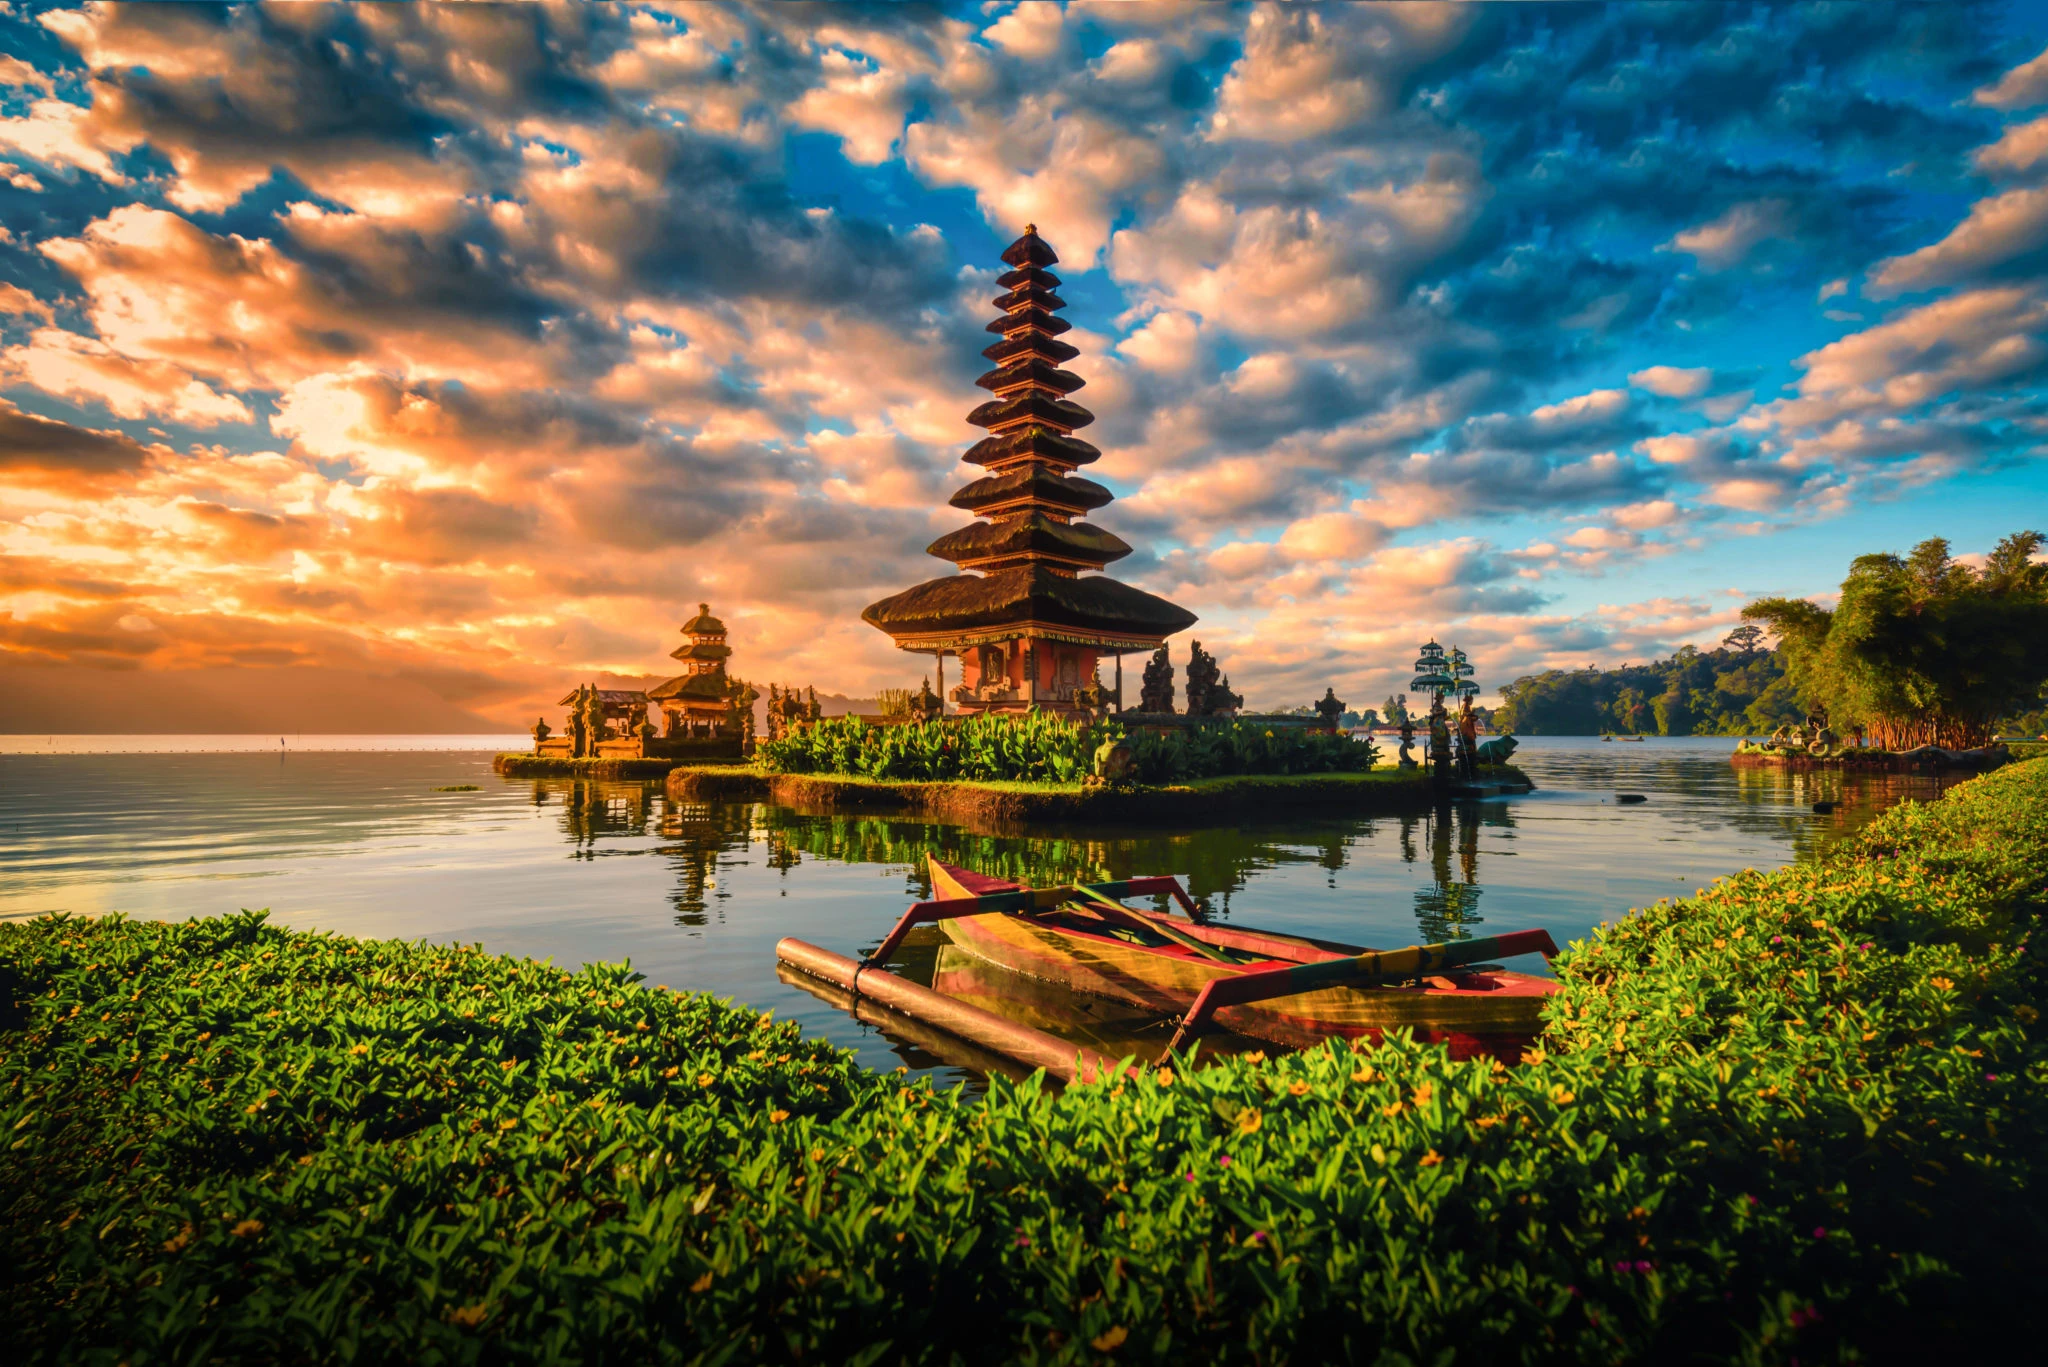 La hermosa isla de Bali: un paraíso tropical en Indonesia